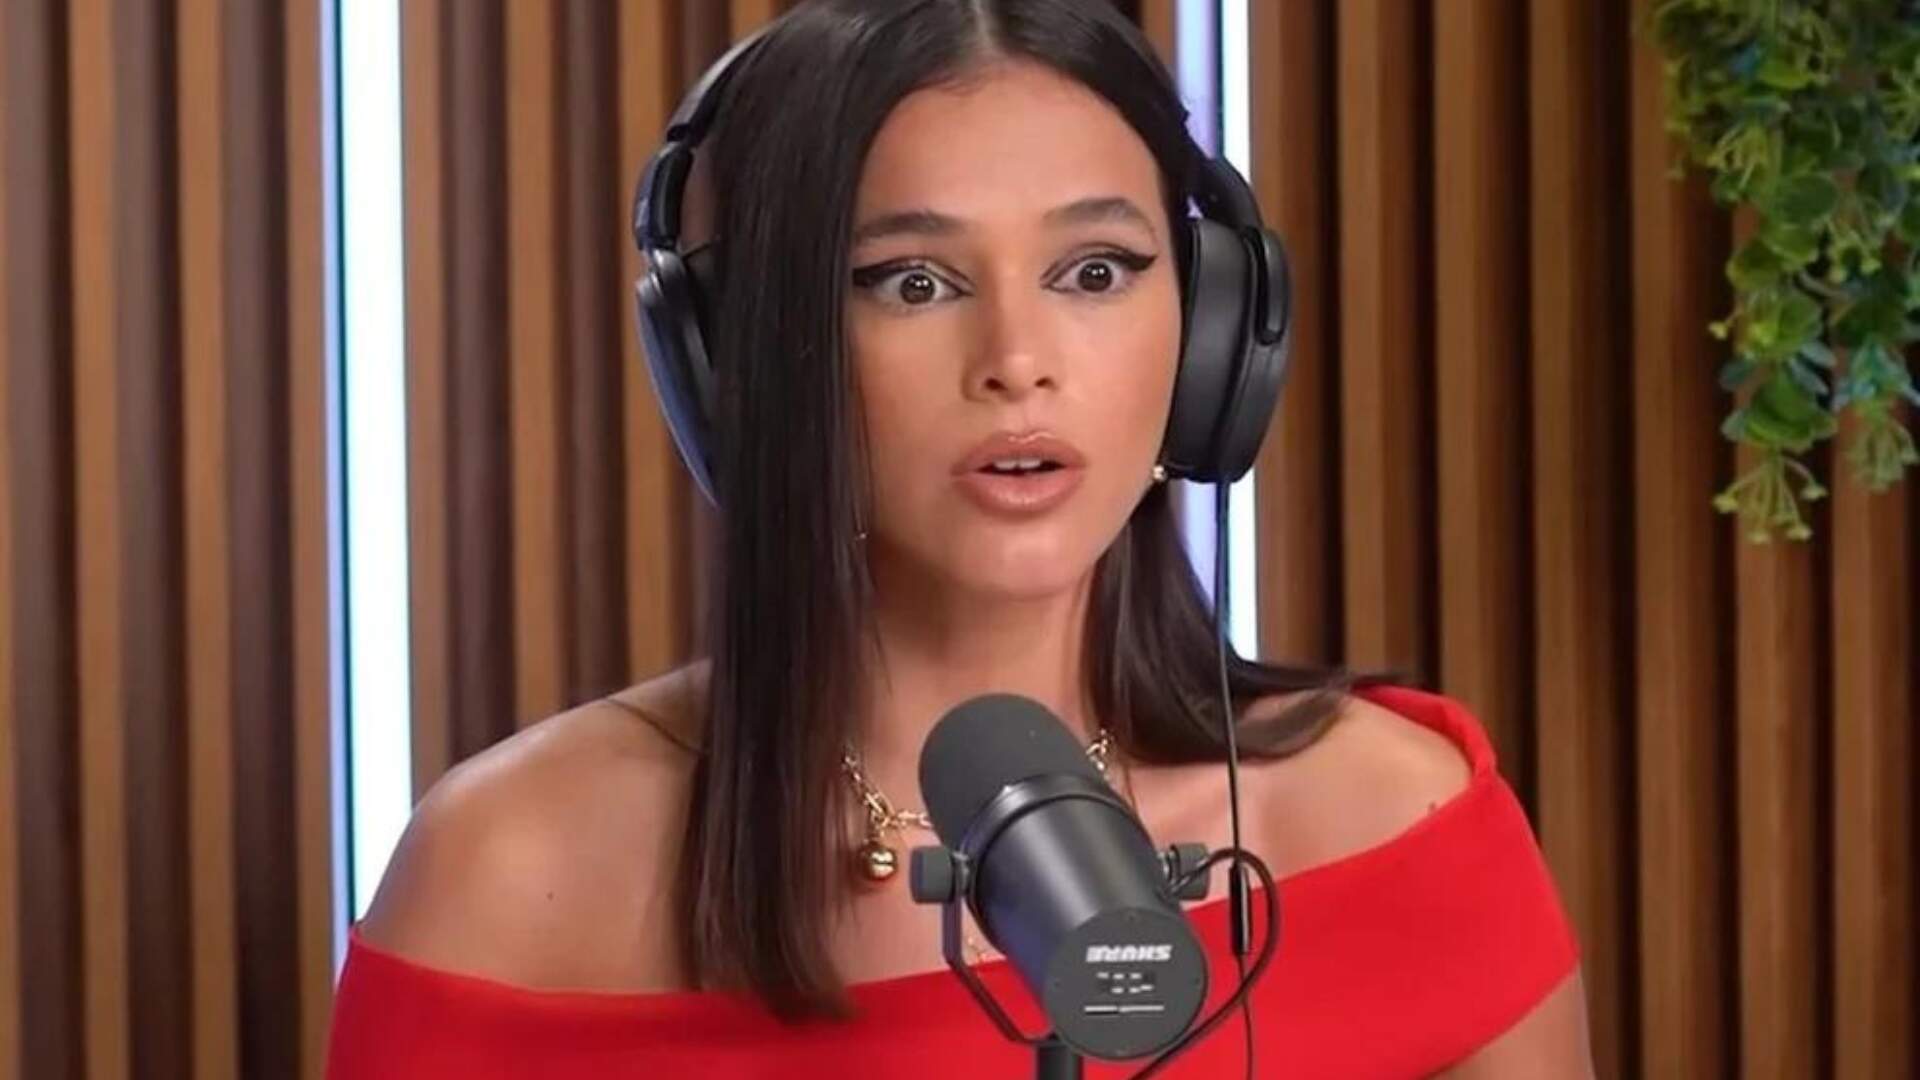 Chocante! Apresentadora da Globo quebra o silêncio e expõe segredo envolvendo Bruna Marquezine - Metropolitana FM